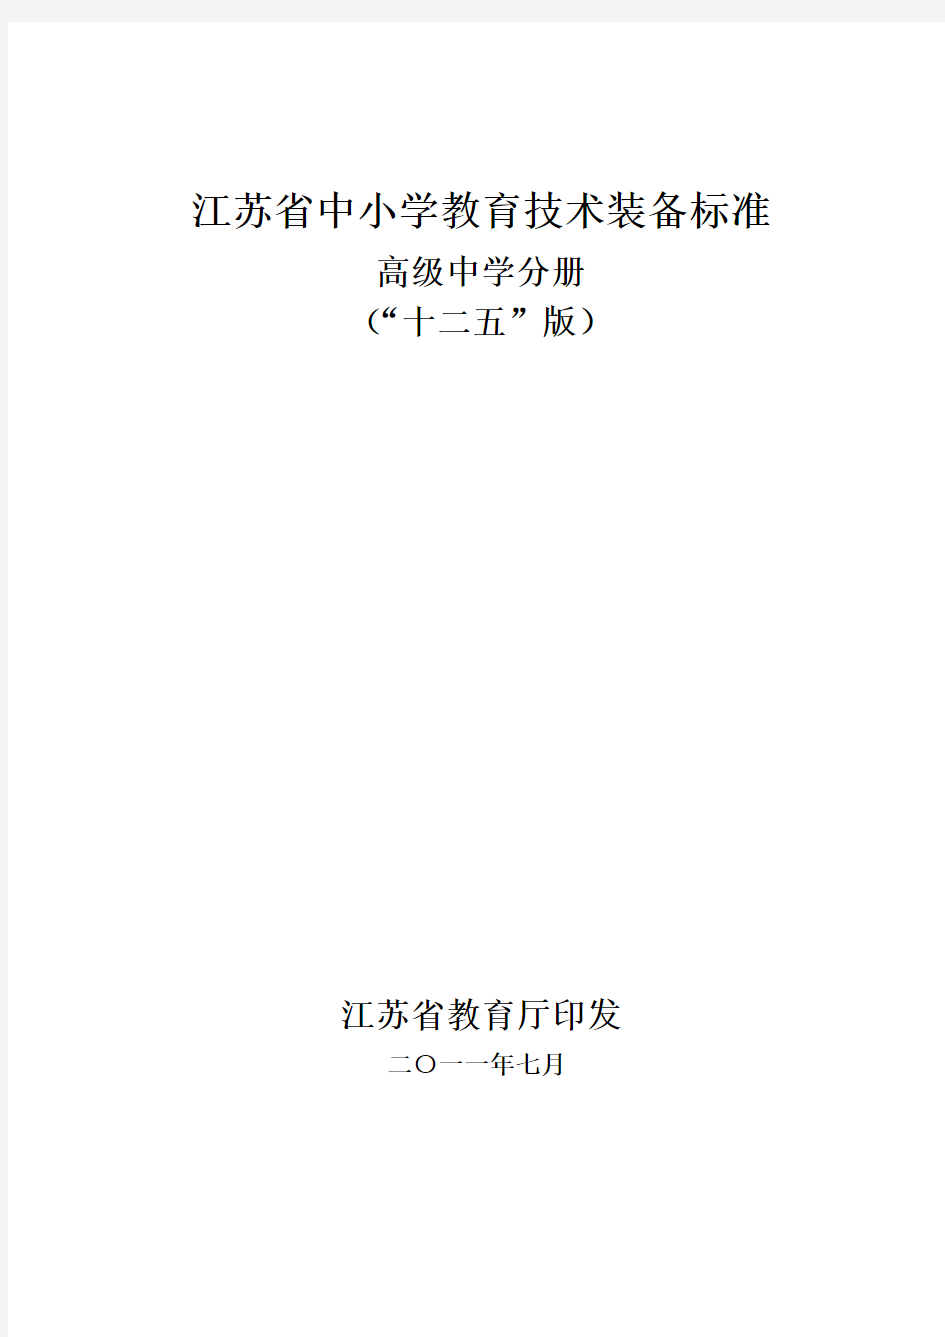 江苏省中小学教育技术装备标准(“十二五”版)：高级中学分册